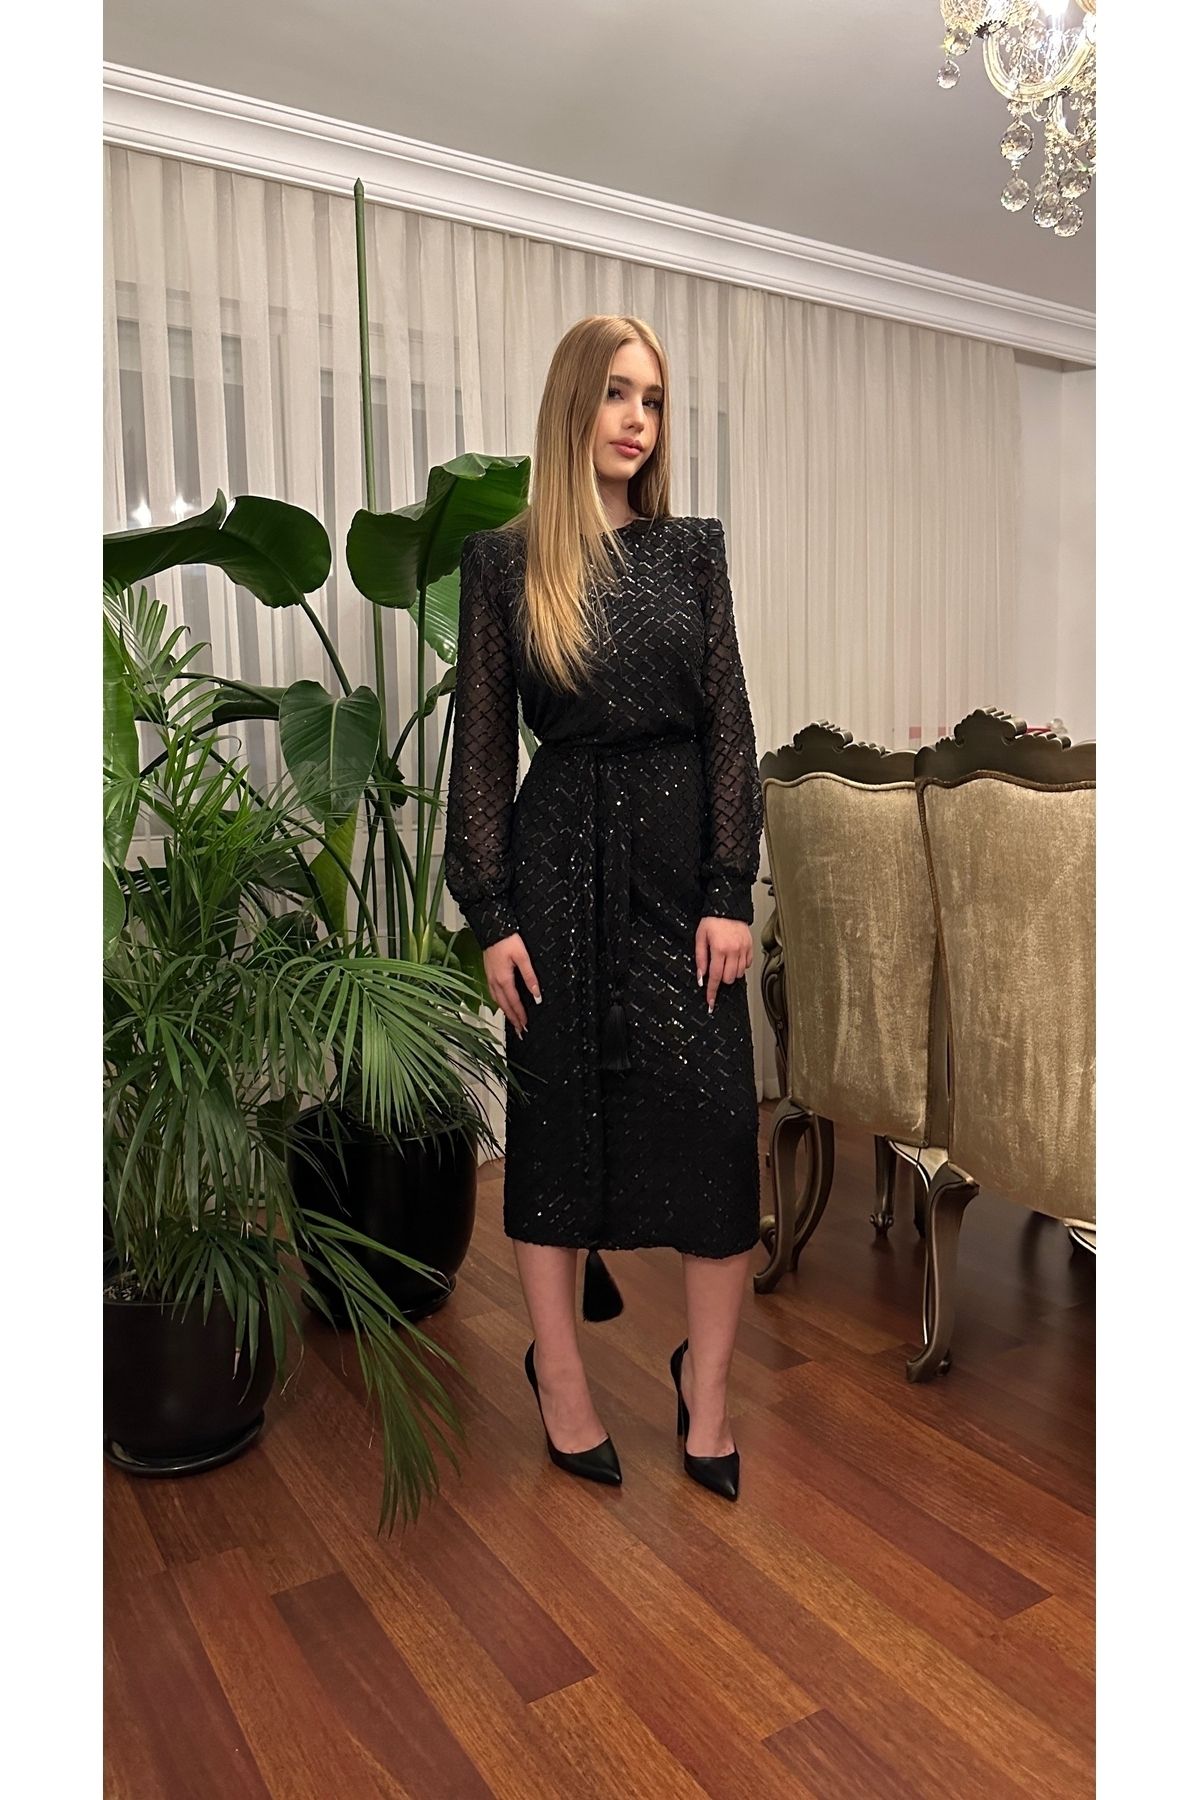 Sultan Ekşioğlu Tasarımı Siyah Kuşaklı Payet Elbise